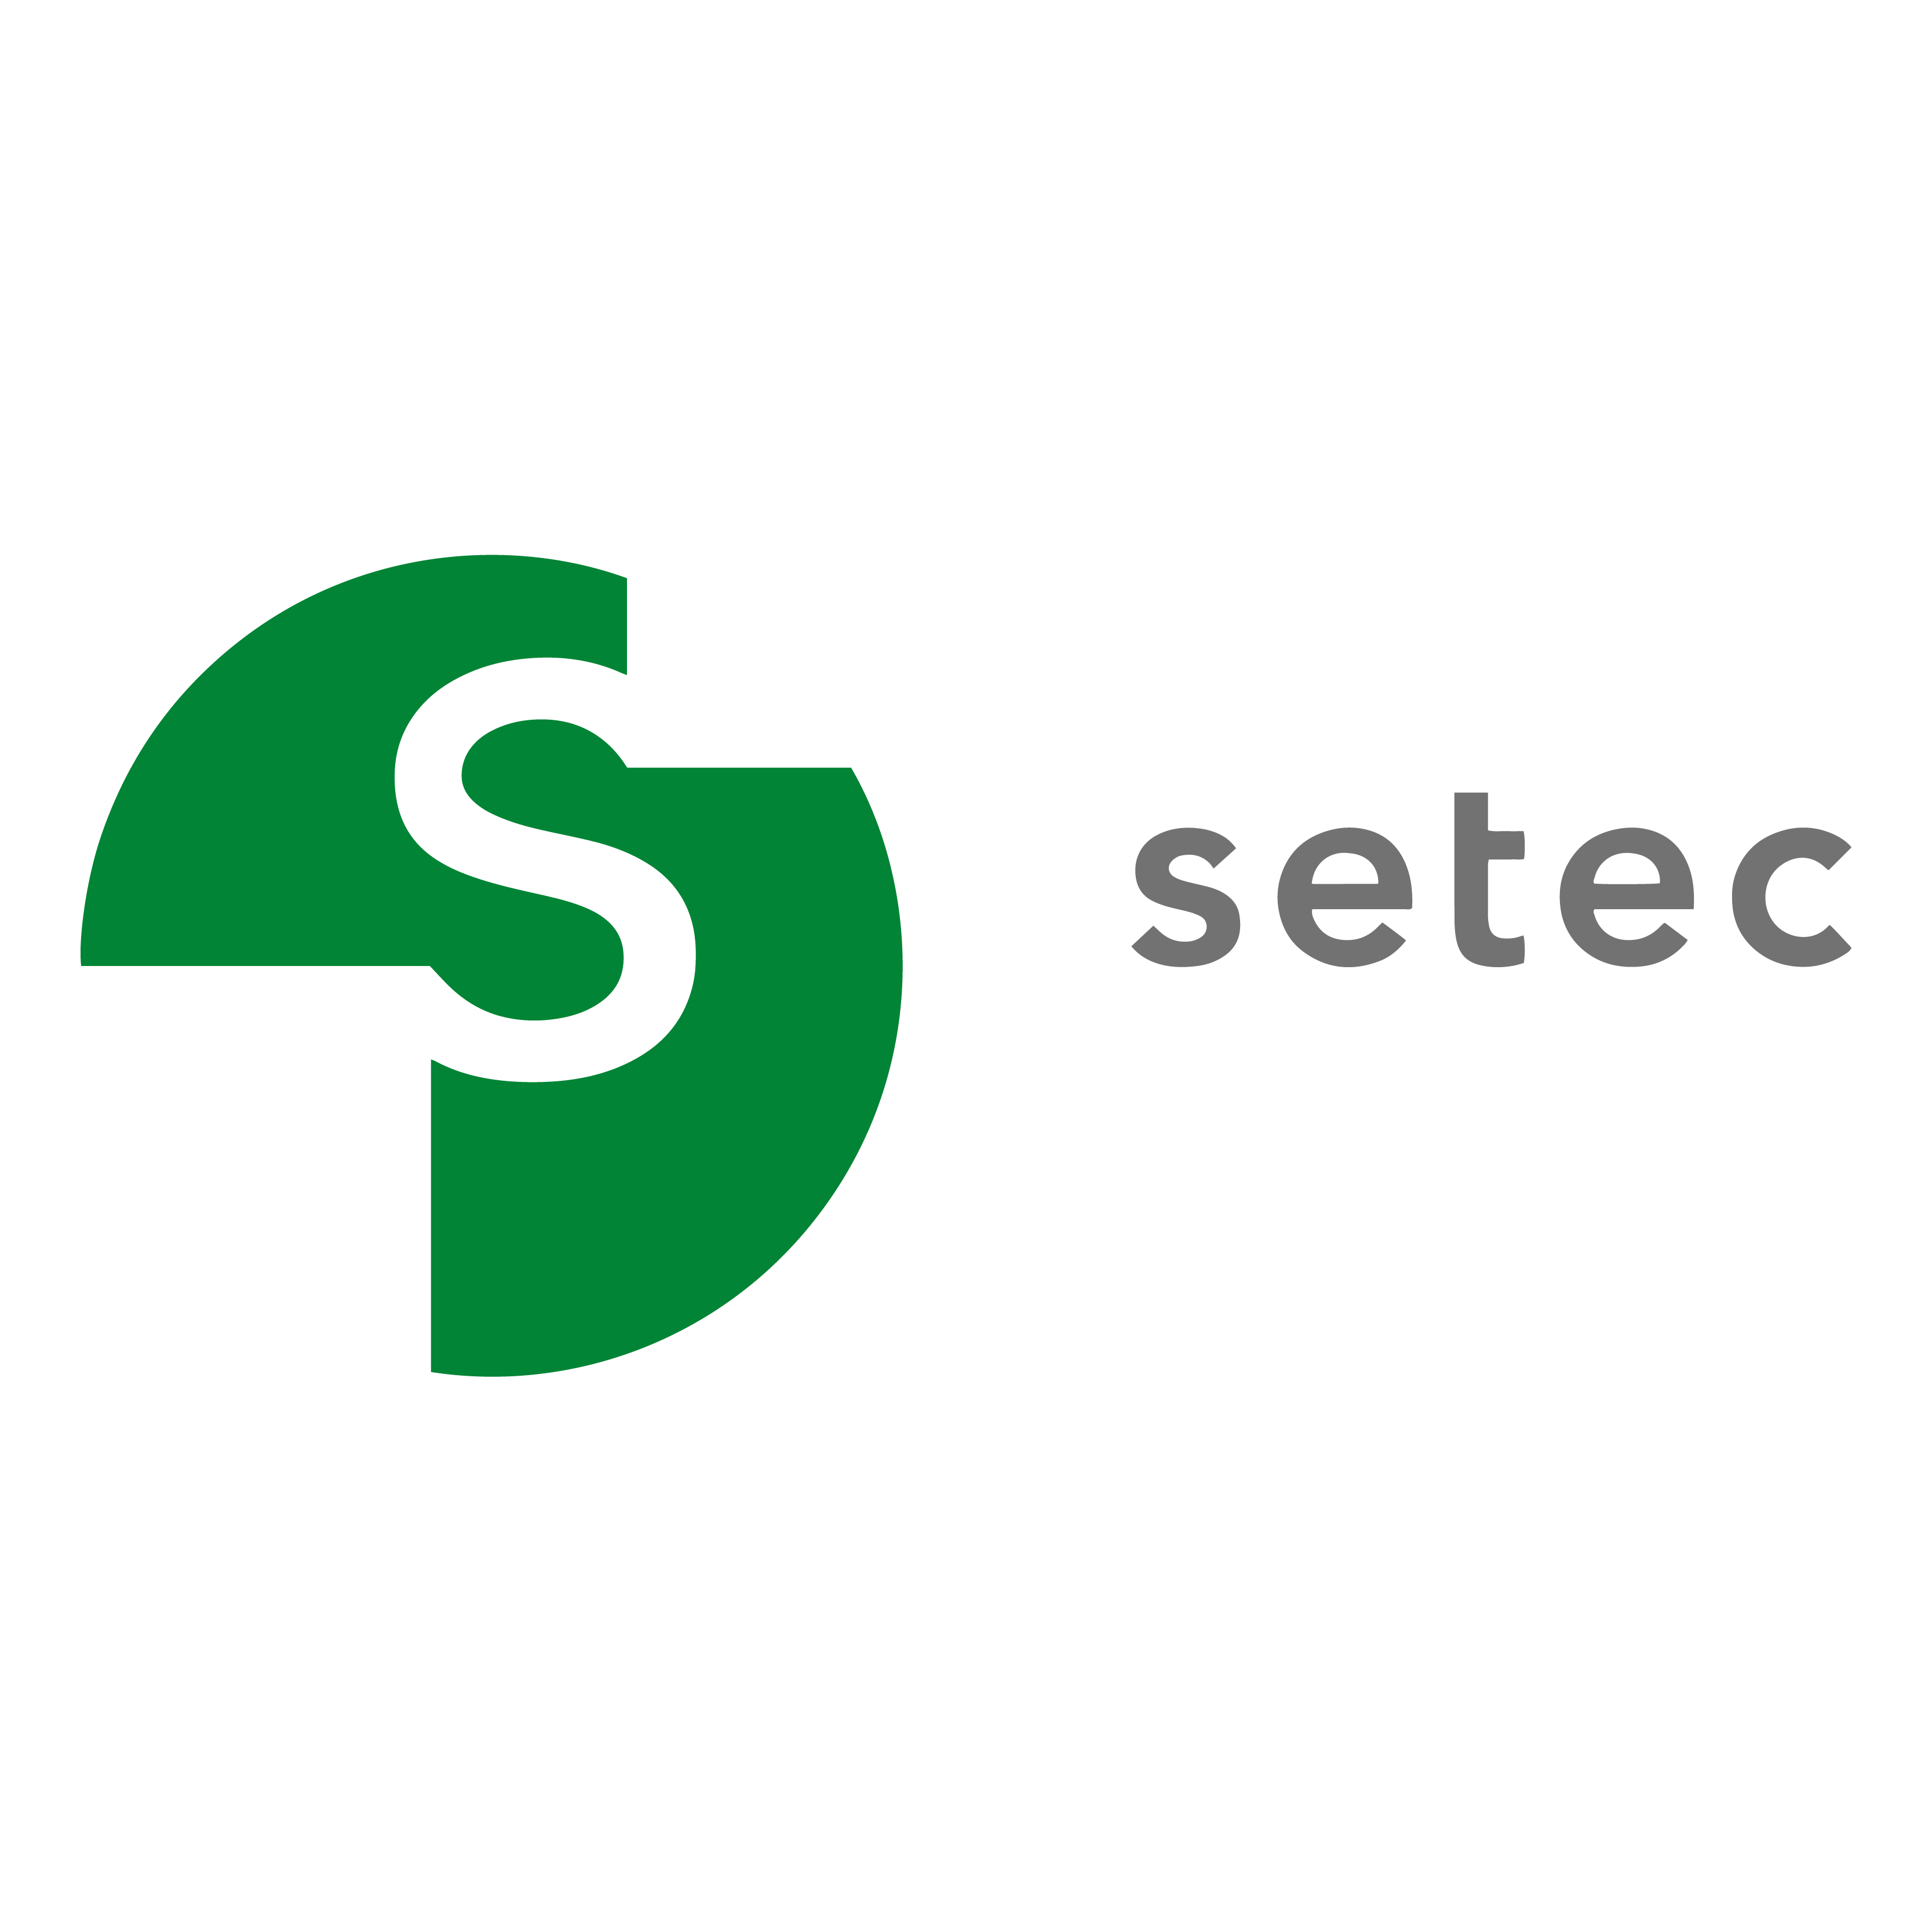 Die Dubai, Dubai, United Arab Emirates Agentur Cactix half Setec dabei, sein Geschäft mit SEO und digitalem Marketing zu vergrößern